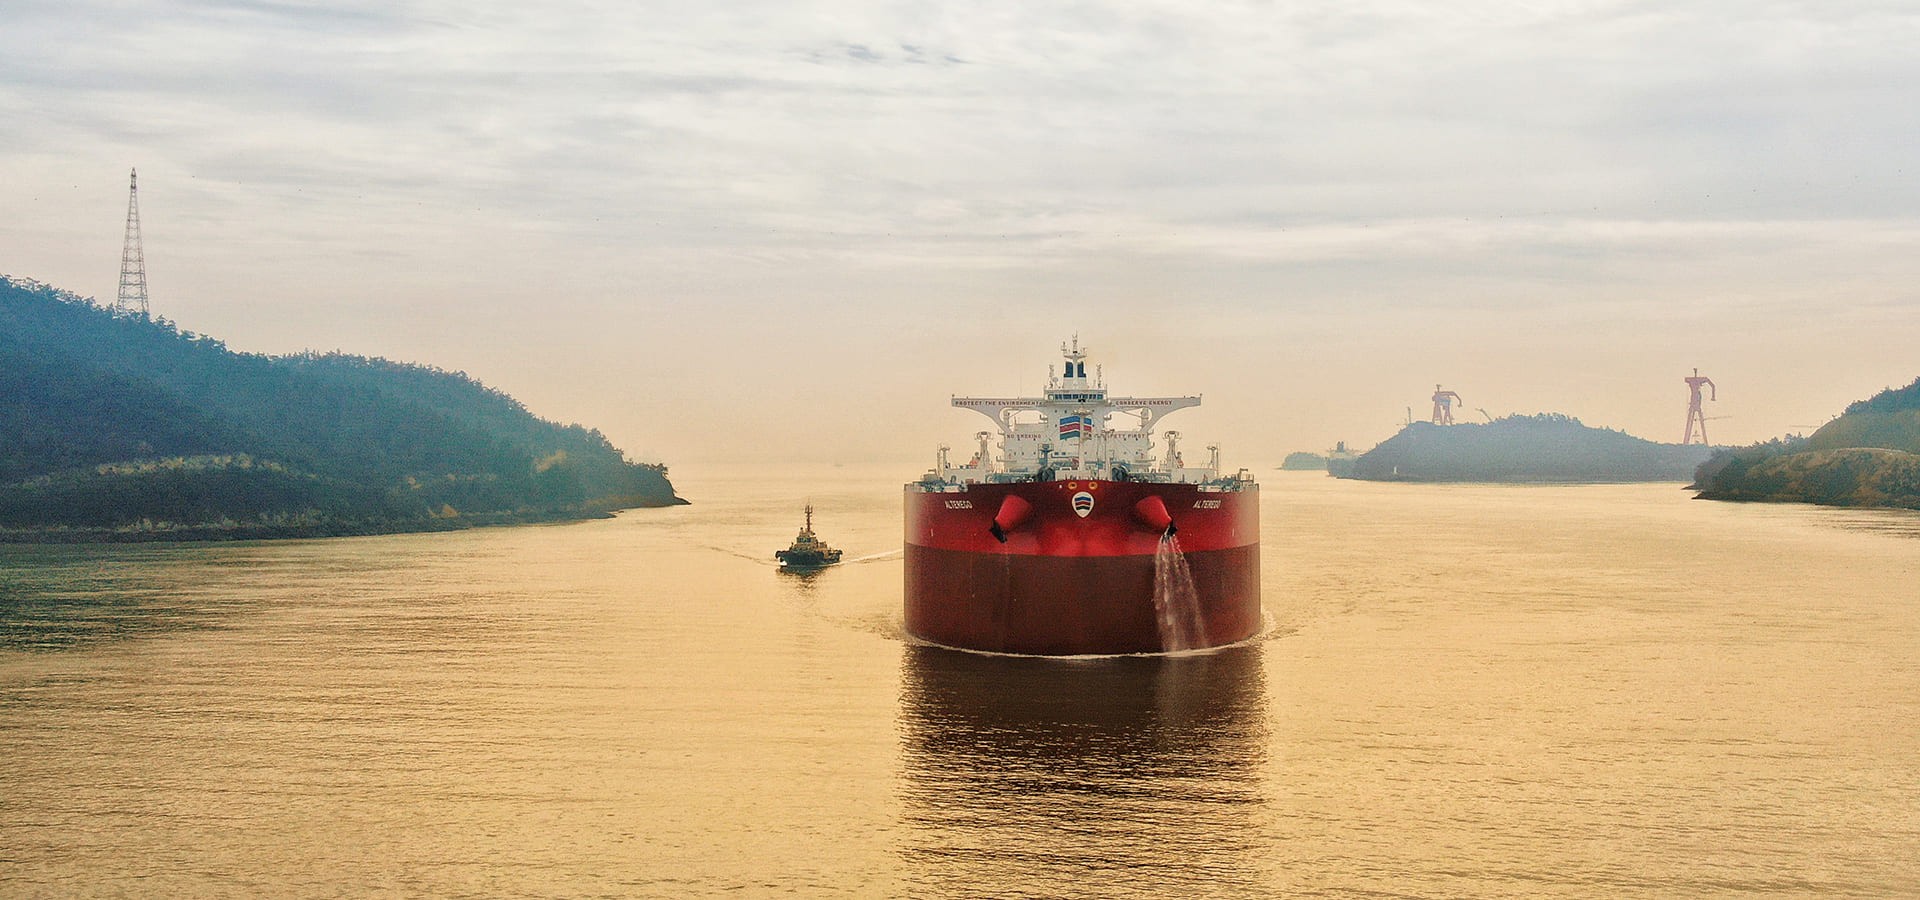 Η Capital Ship Management
Corp. δεσμεύεται απολύτως
σε ότι αφορά την Αριστεία,
την Ασφάλεια, την Υγεία και
τις Περιβαλλοντικές Επιδόσεις.